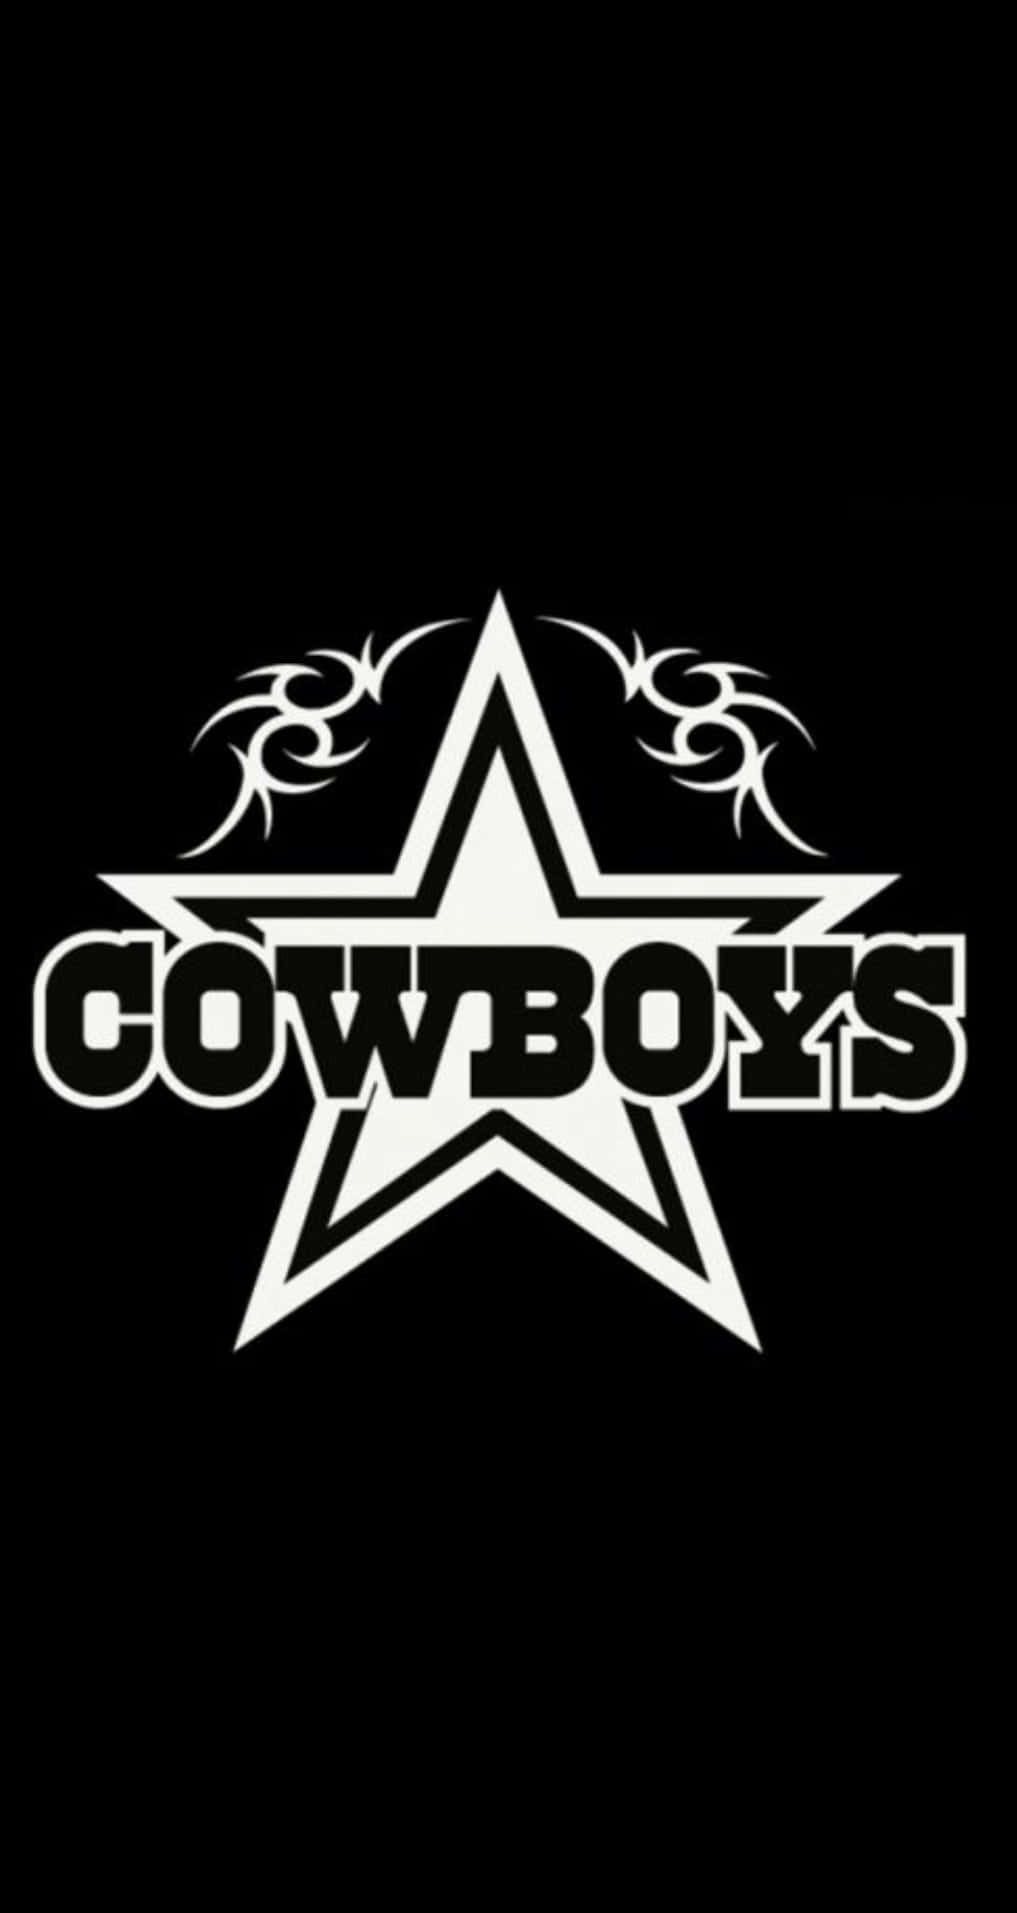 Ereditàdei Cowboys: Una Tradizione Del Rodeo